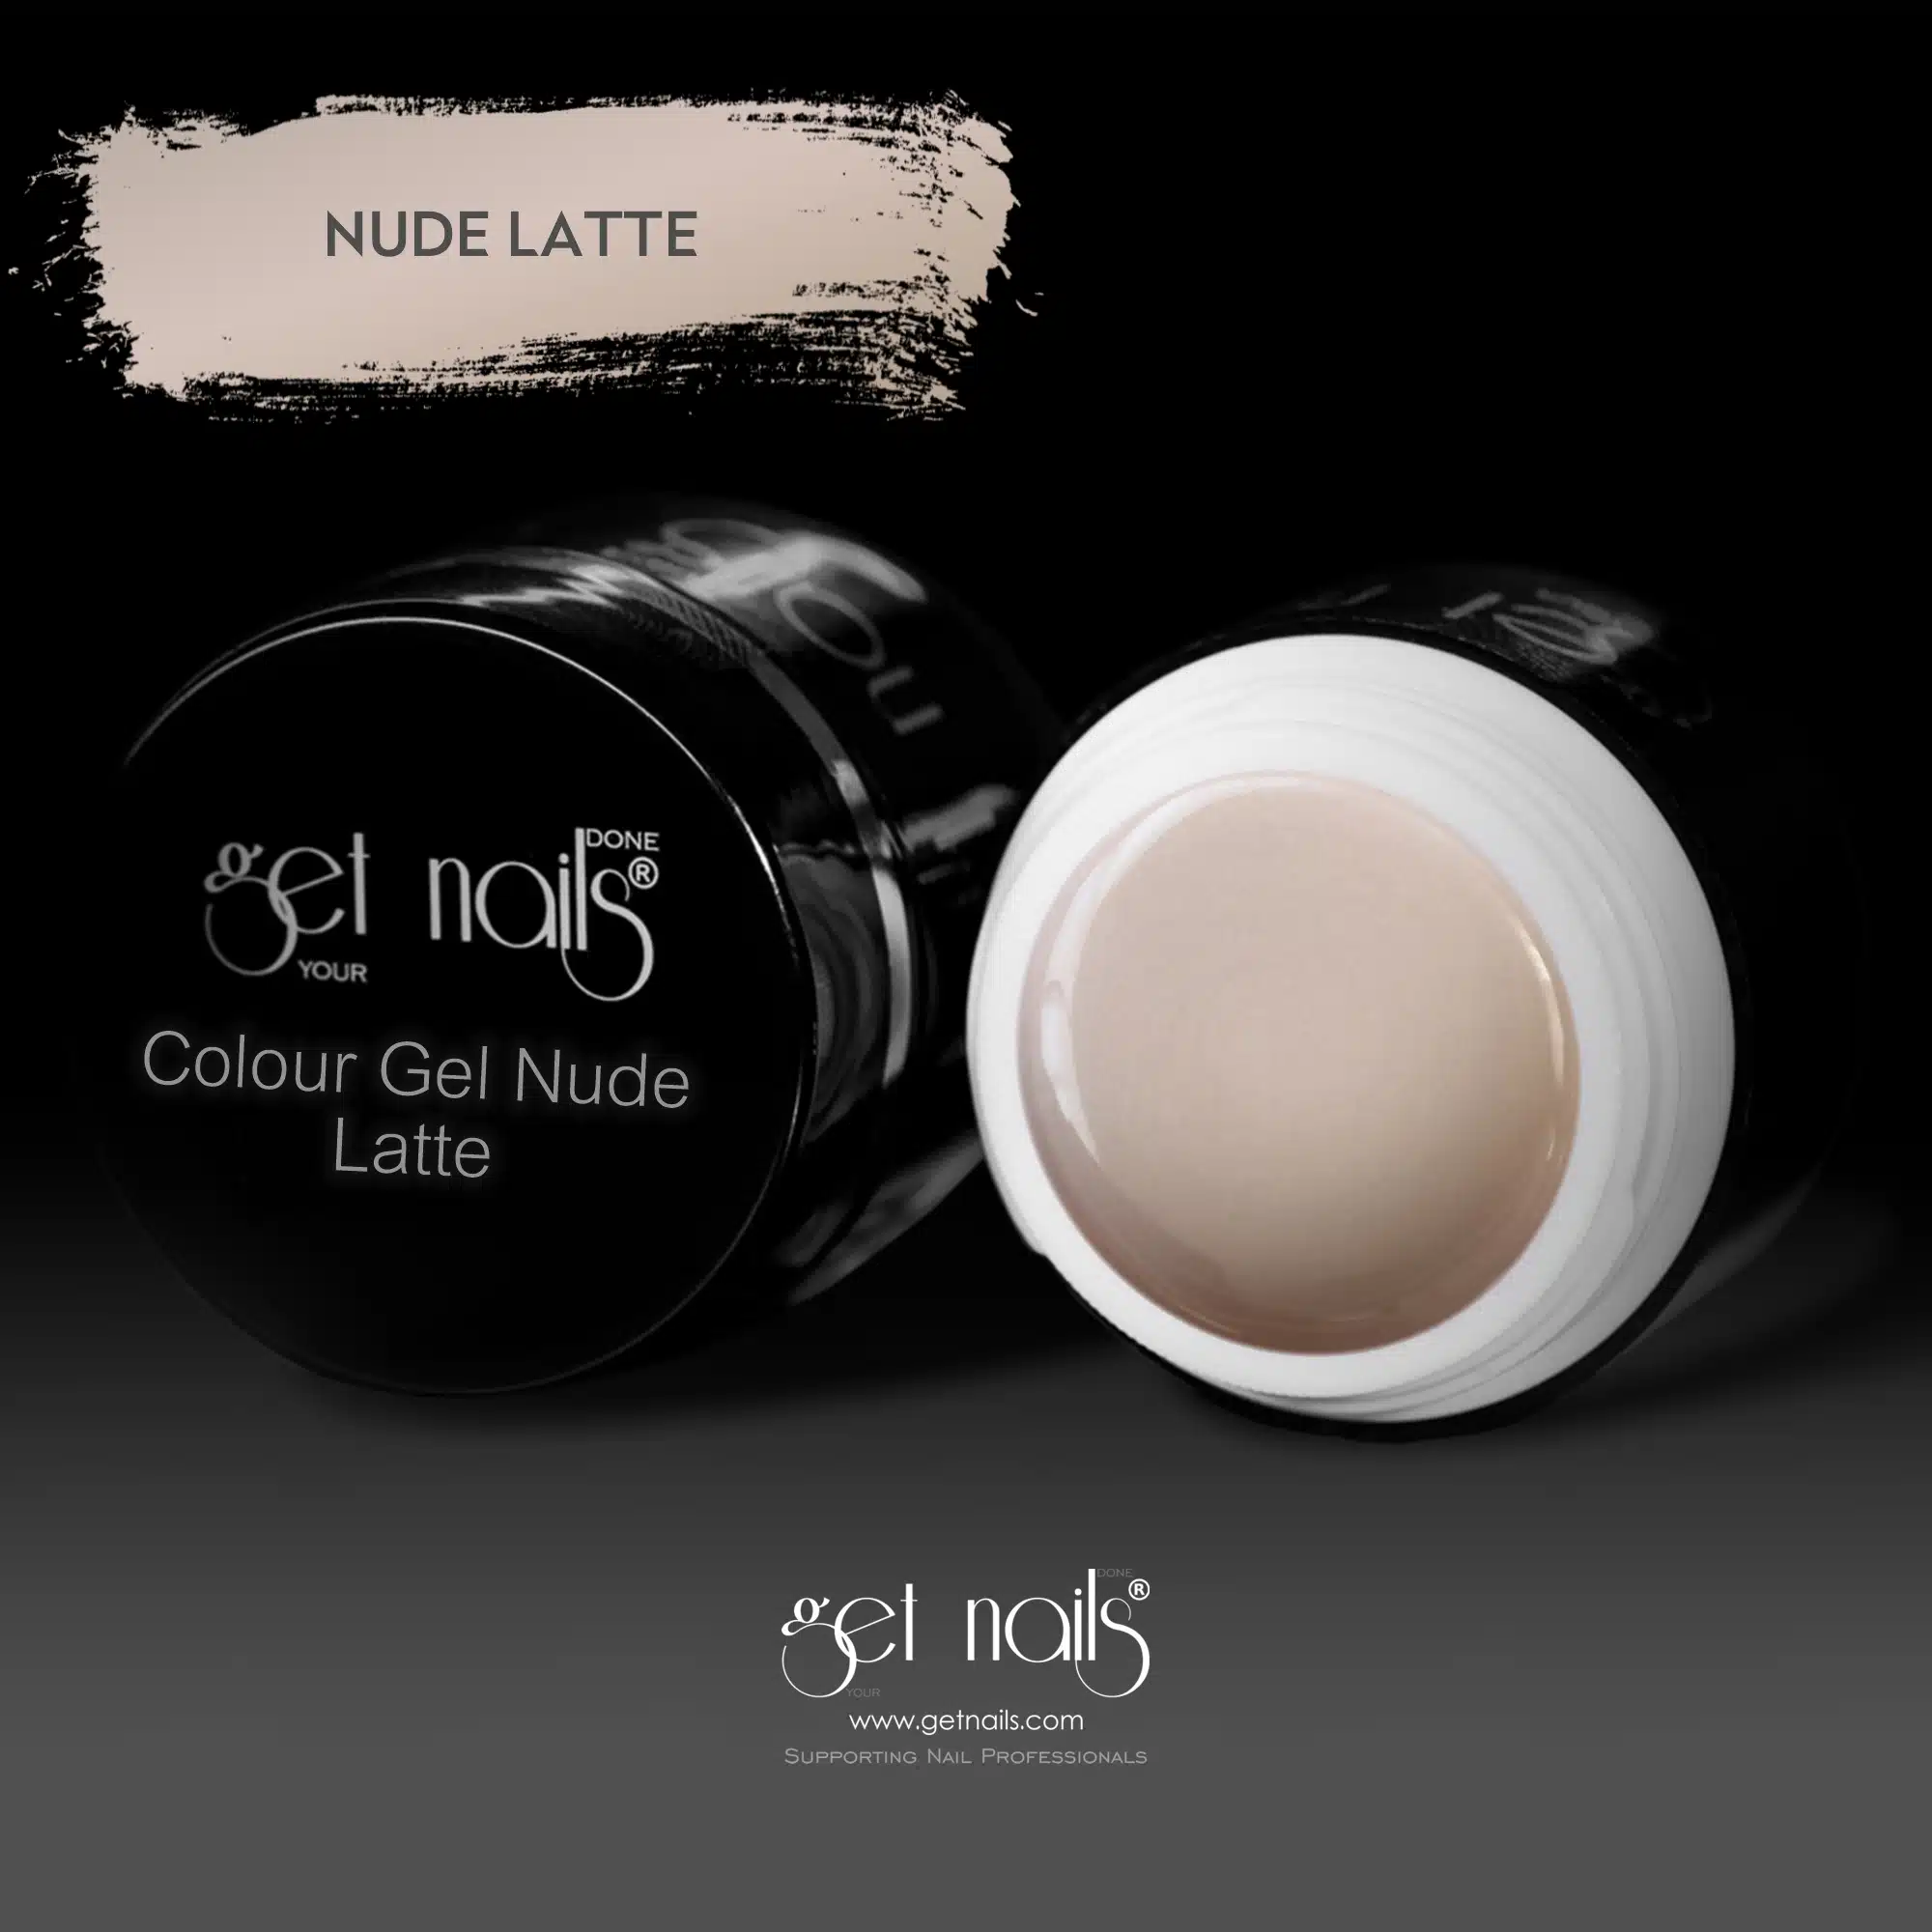 Get Nails Austria - Colour Gel Nude Latte 5g